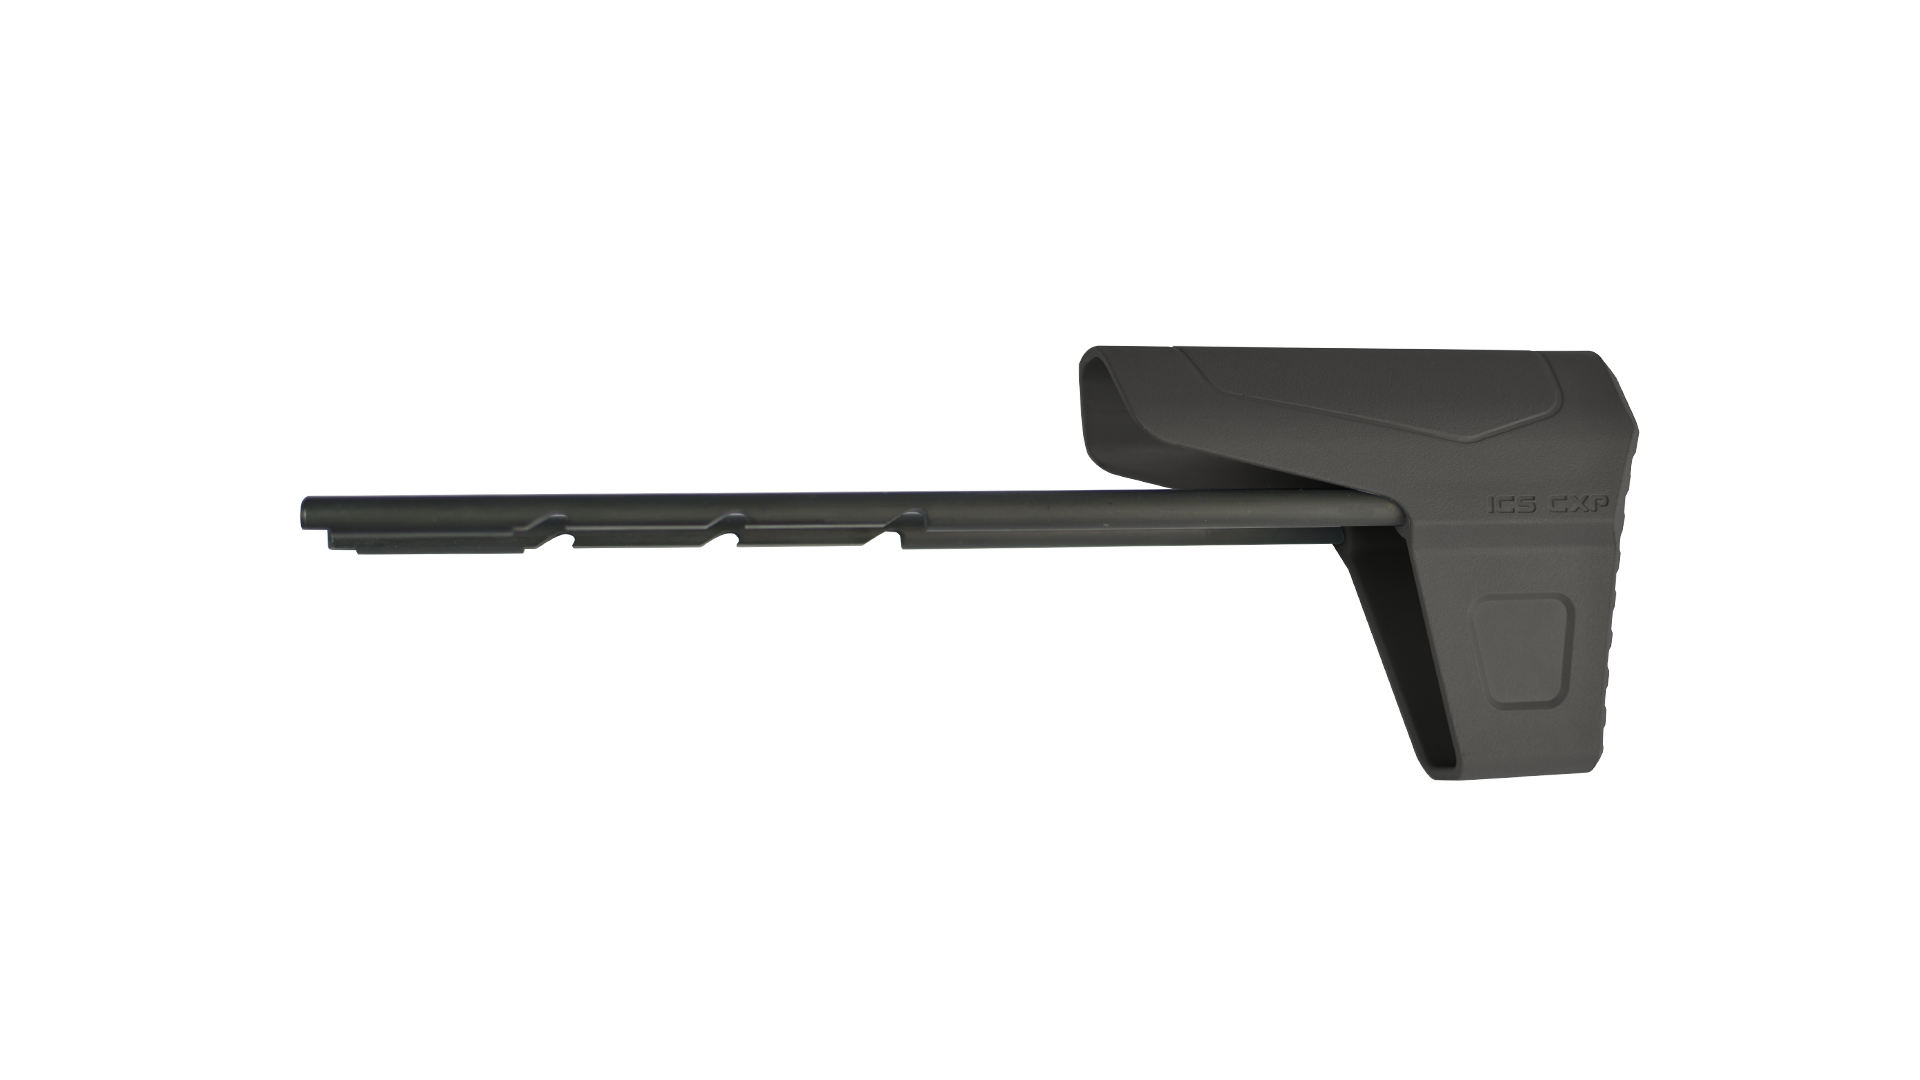 【MA-469】PDW9 槍托底板組-黑色